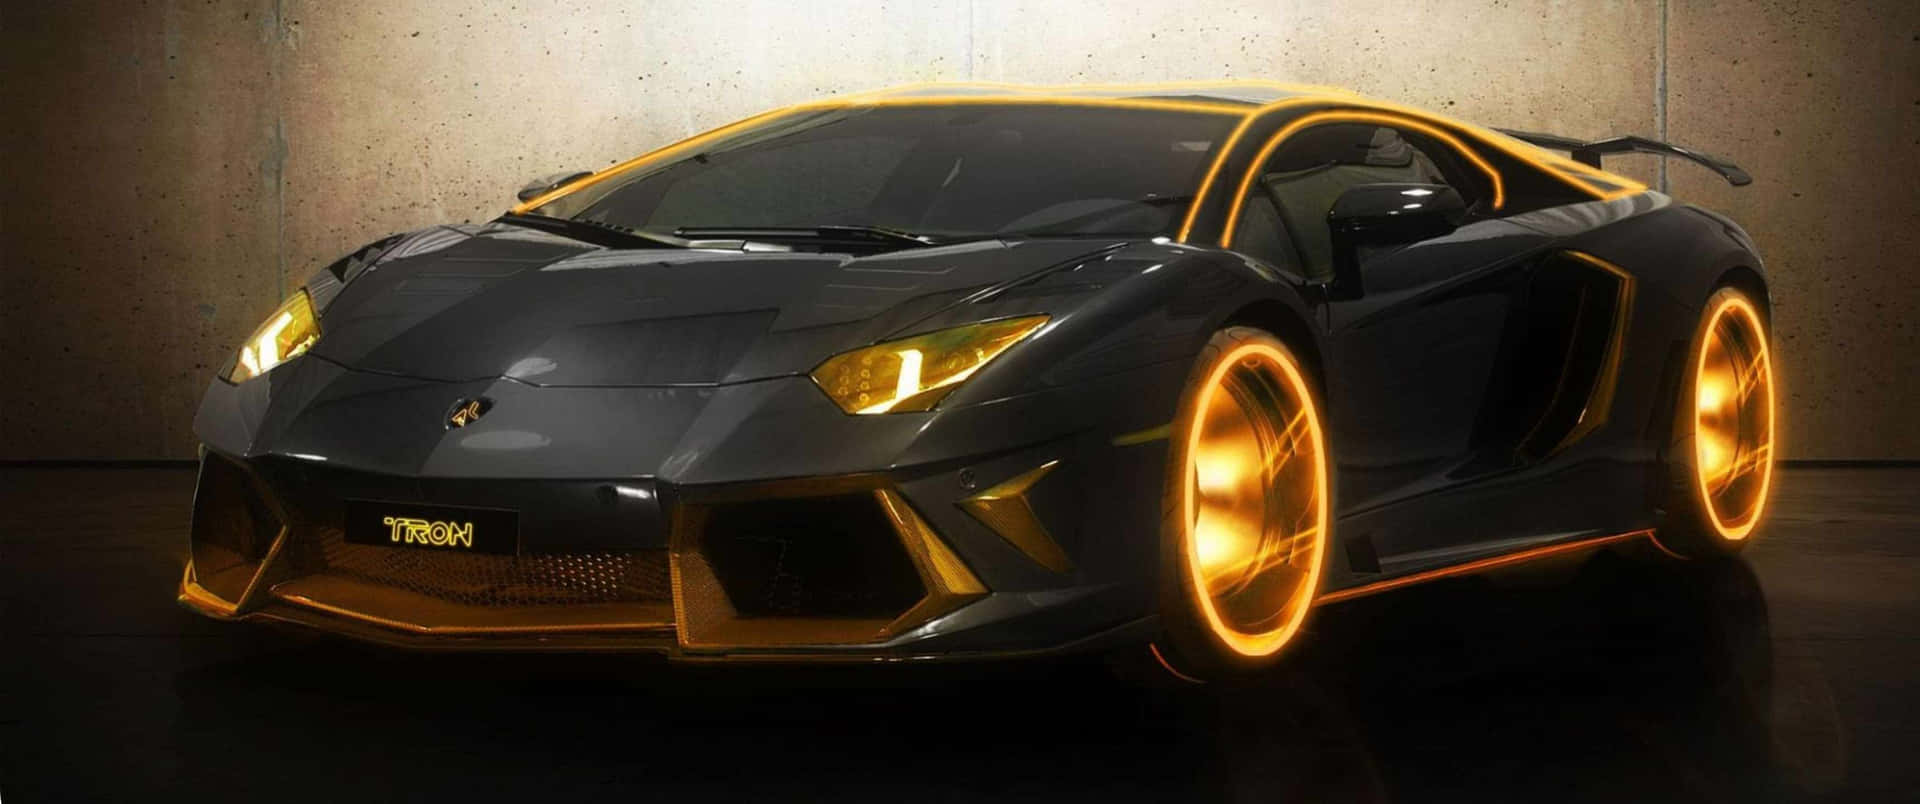 Geschwindigkeitund Stil: Beschleunige Dein Leben Mit Diesem Luxuriösen Lamborghini.